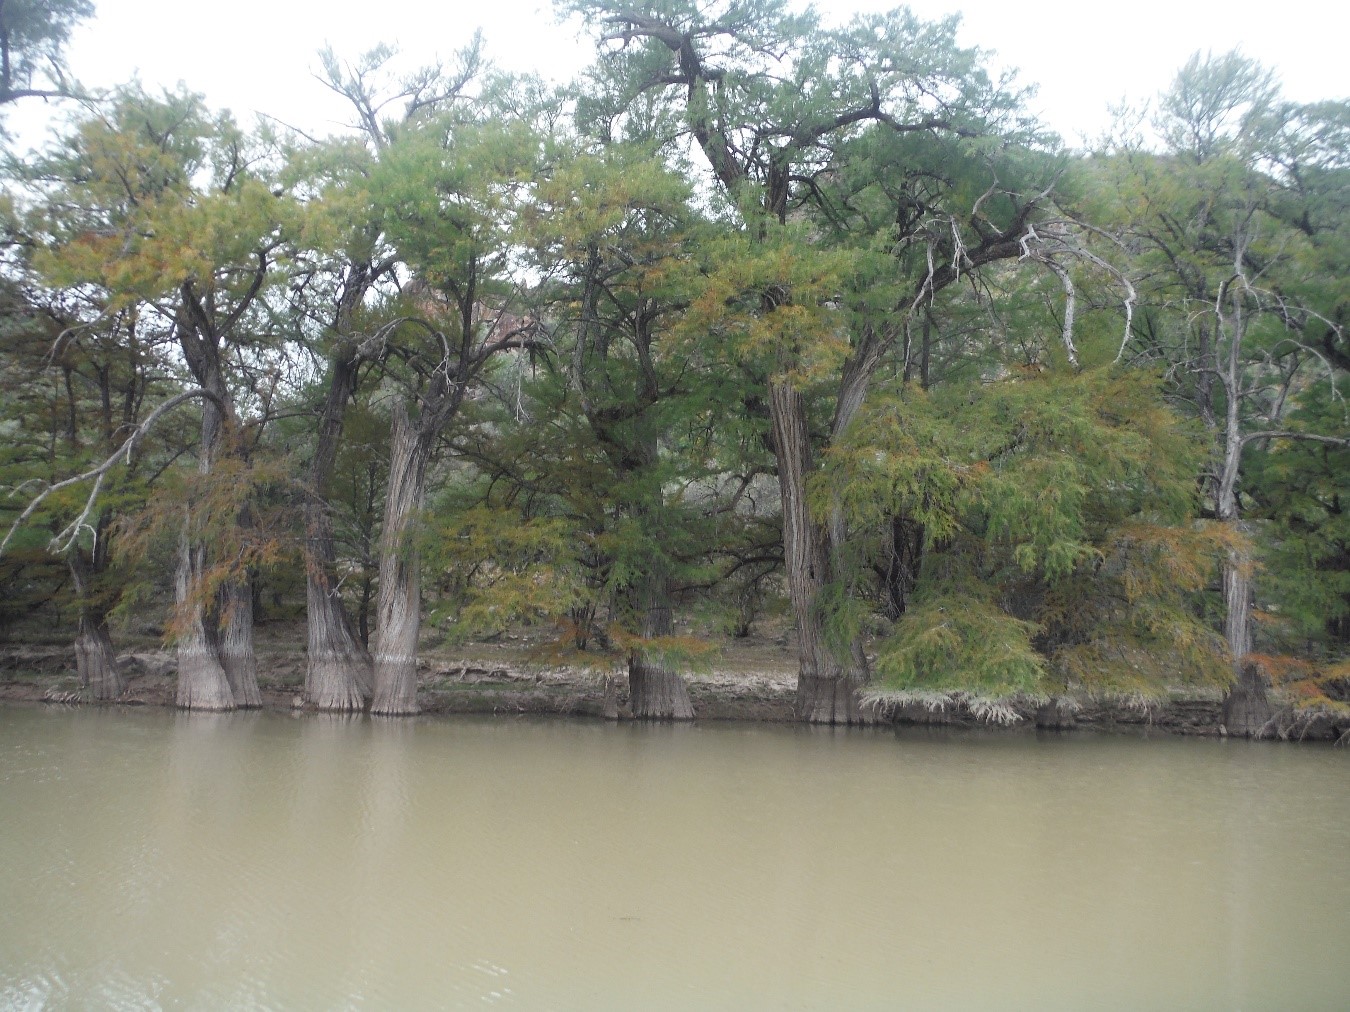 Árboles longevos de ahuehuete o sabino (Taxodium mucronatum Ten.) en parajes del río Nazas, Durango. Algunos ejemplares de esta especie pueden alcanzar más de 1000 años de edad en este sistema ripario